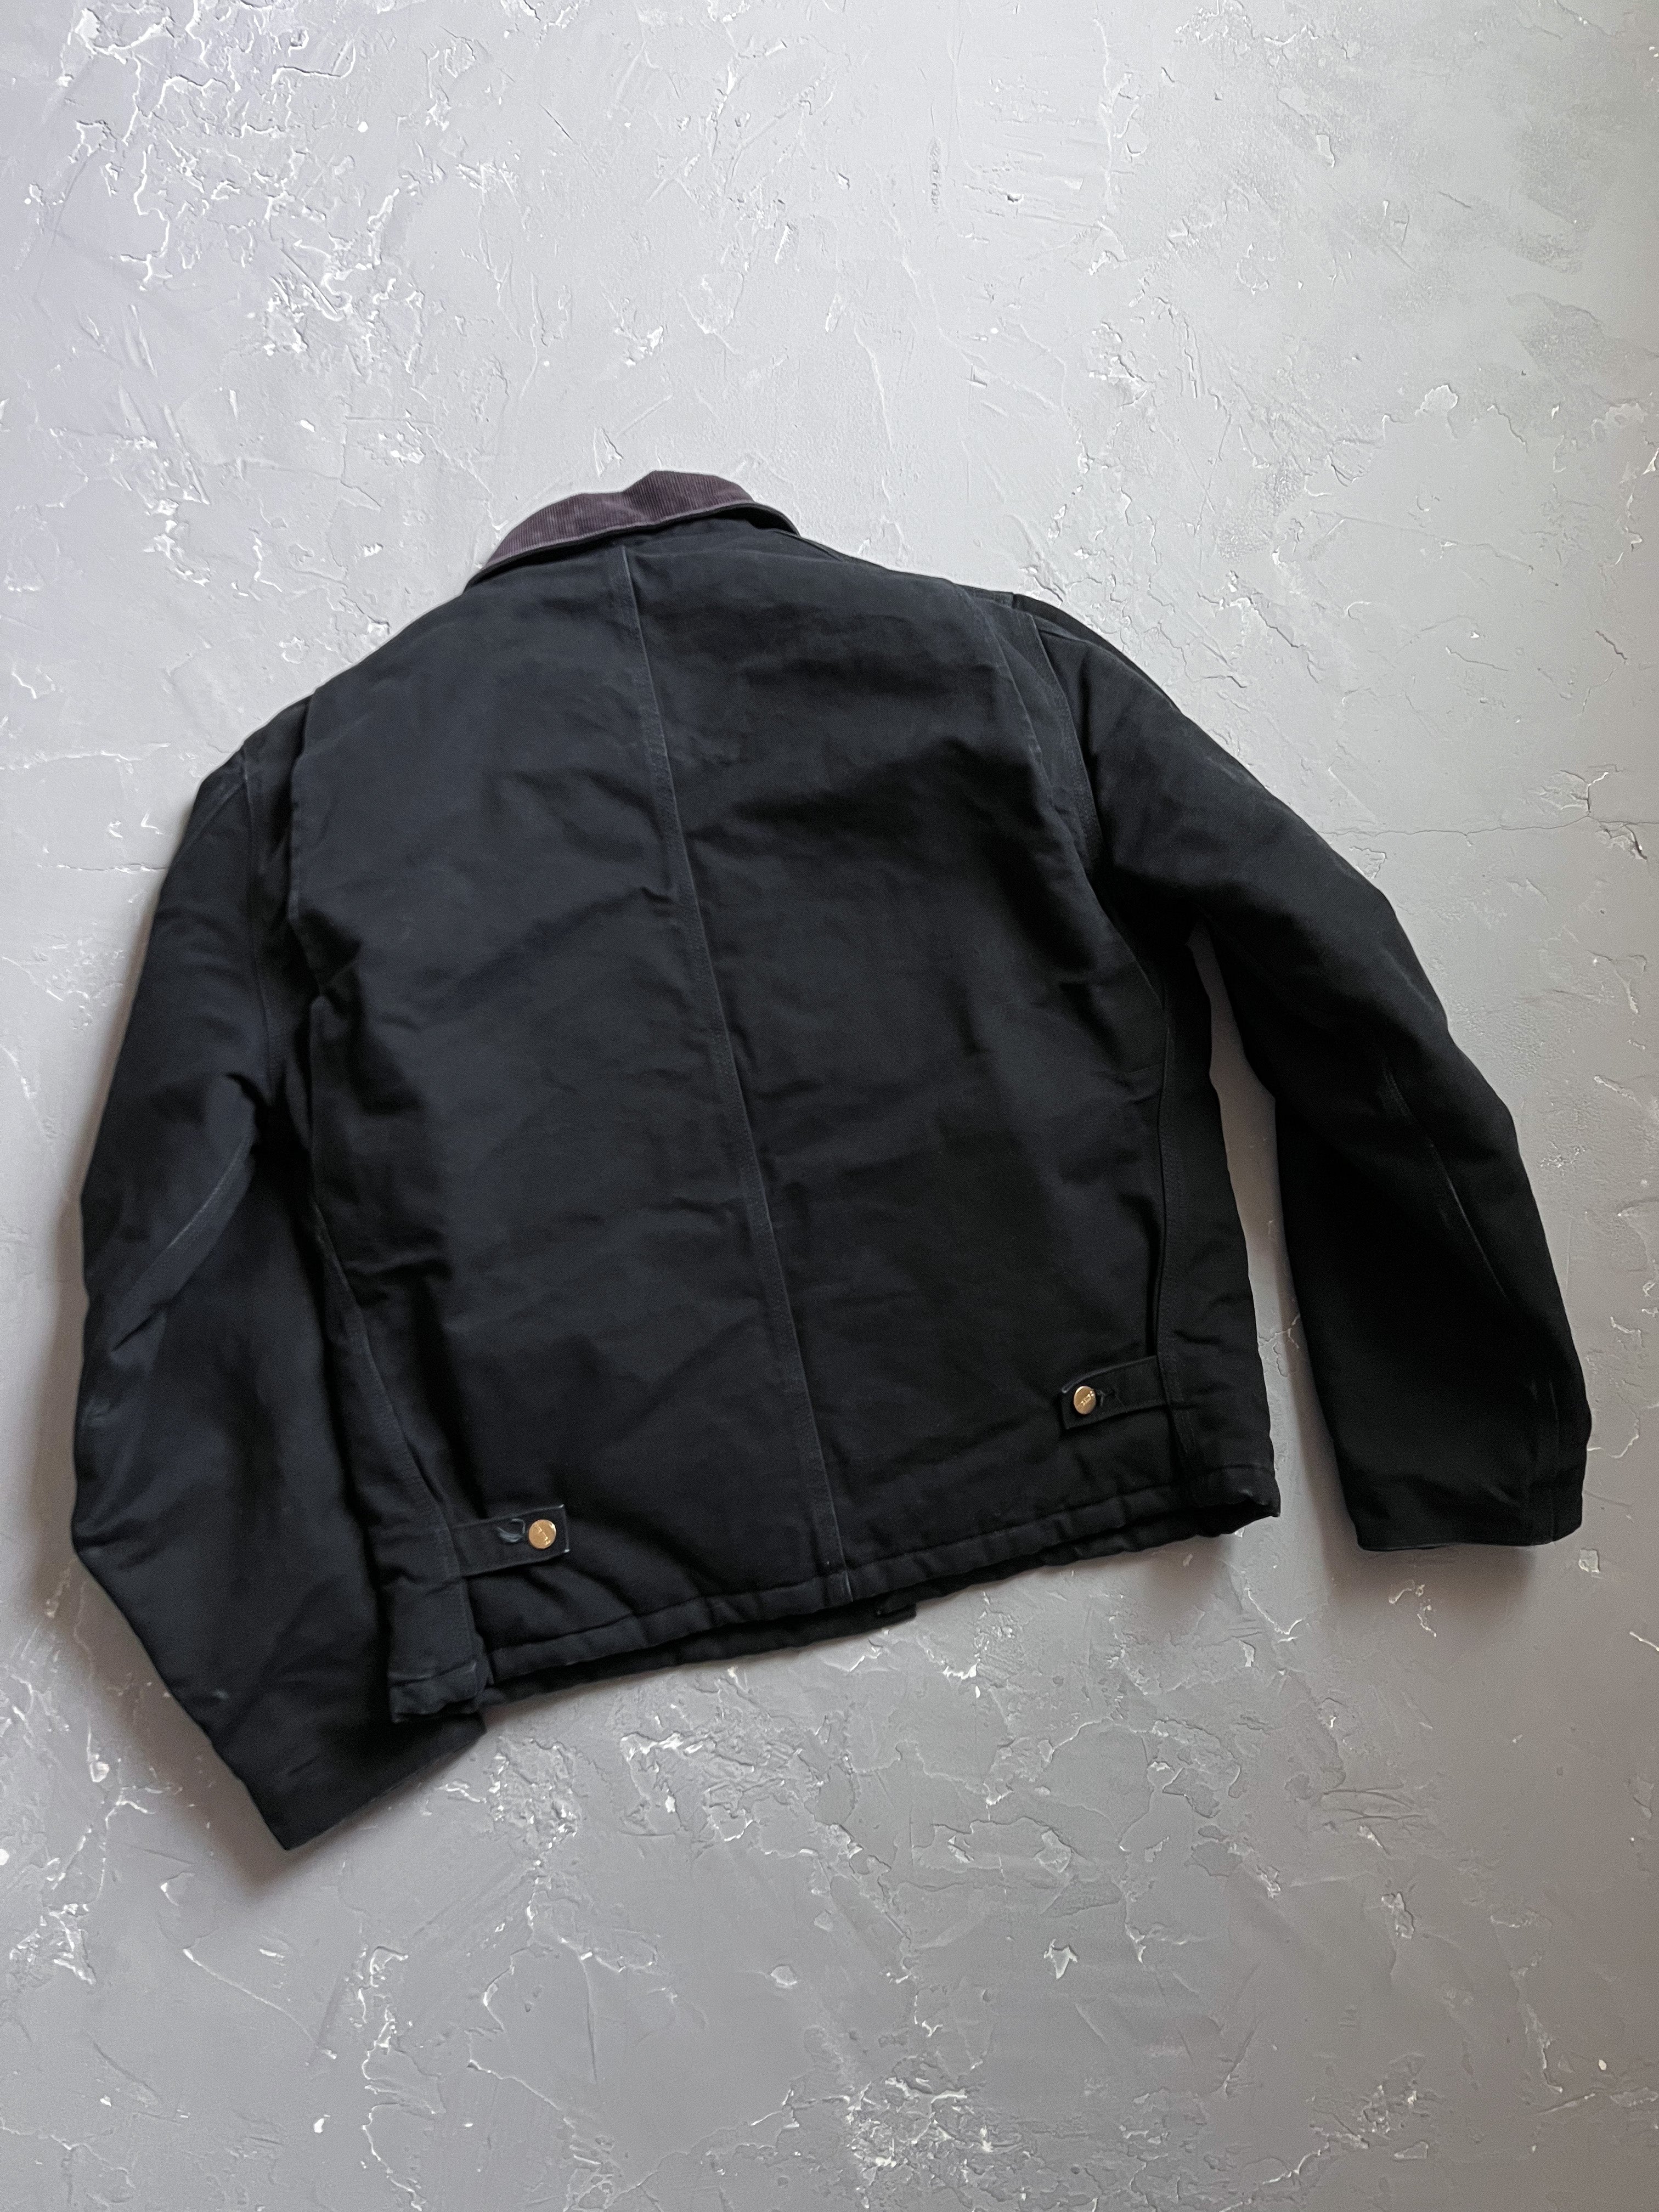 Carhartt Black Arctic Jacket [L]